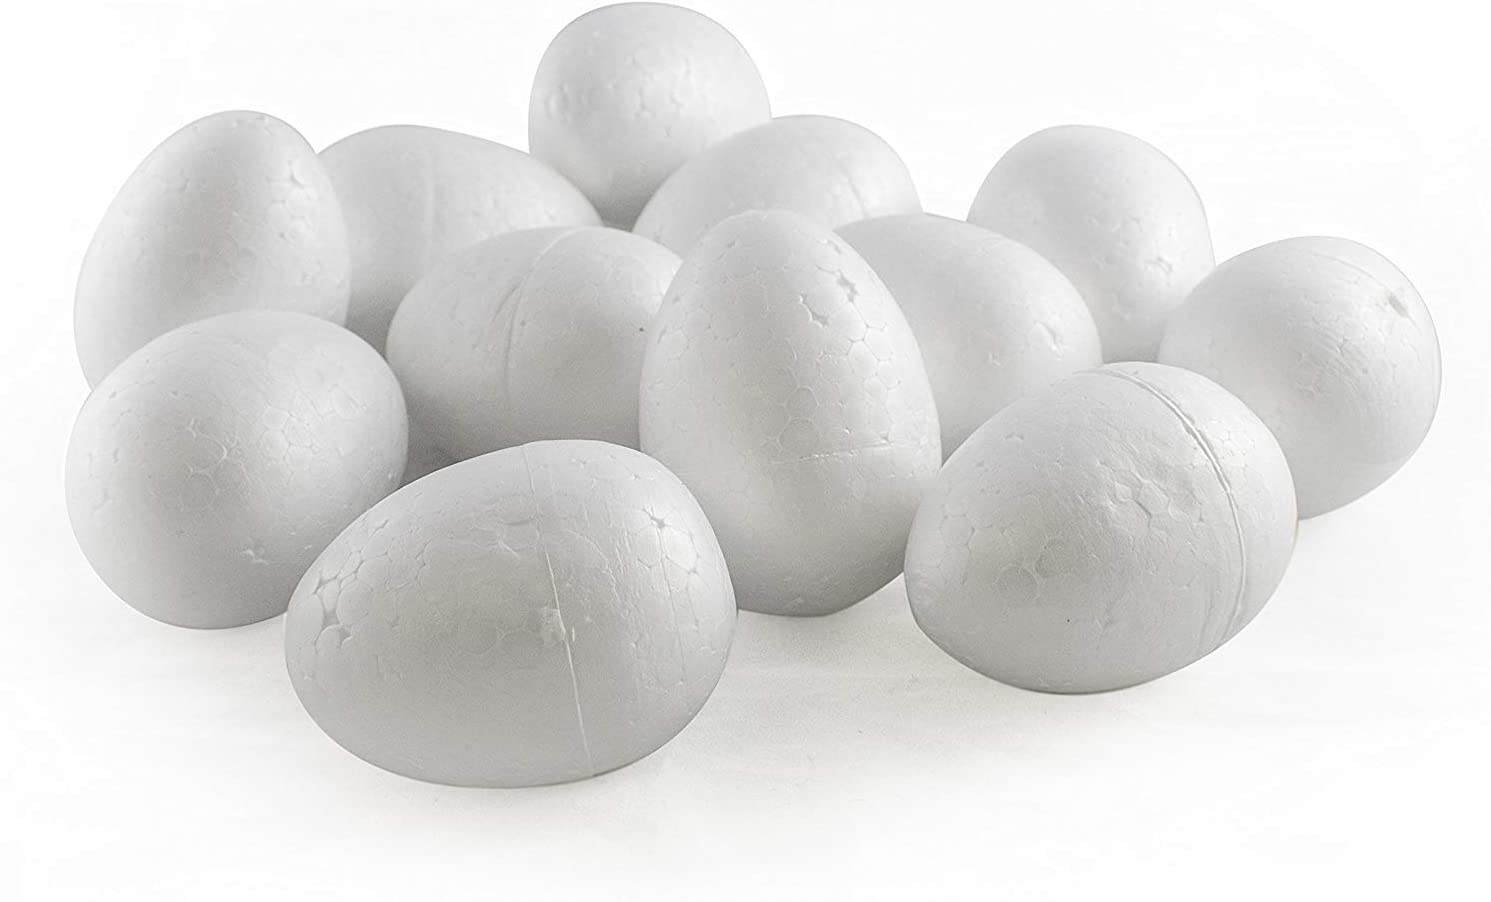 Polystyrene Easter Eggs – Amazon